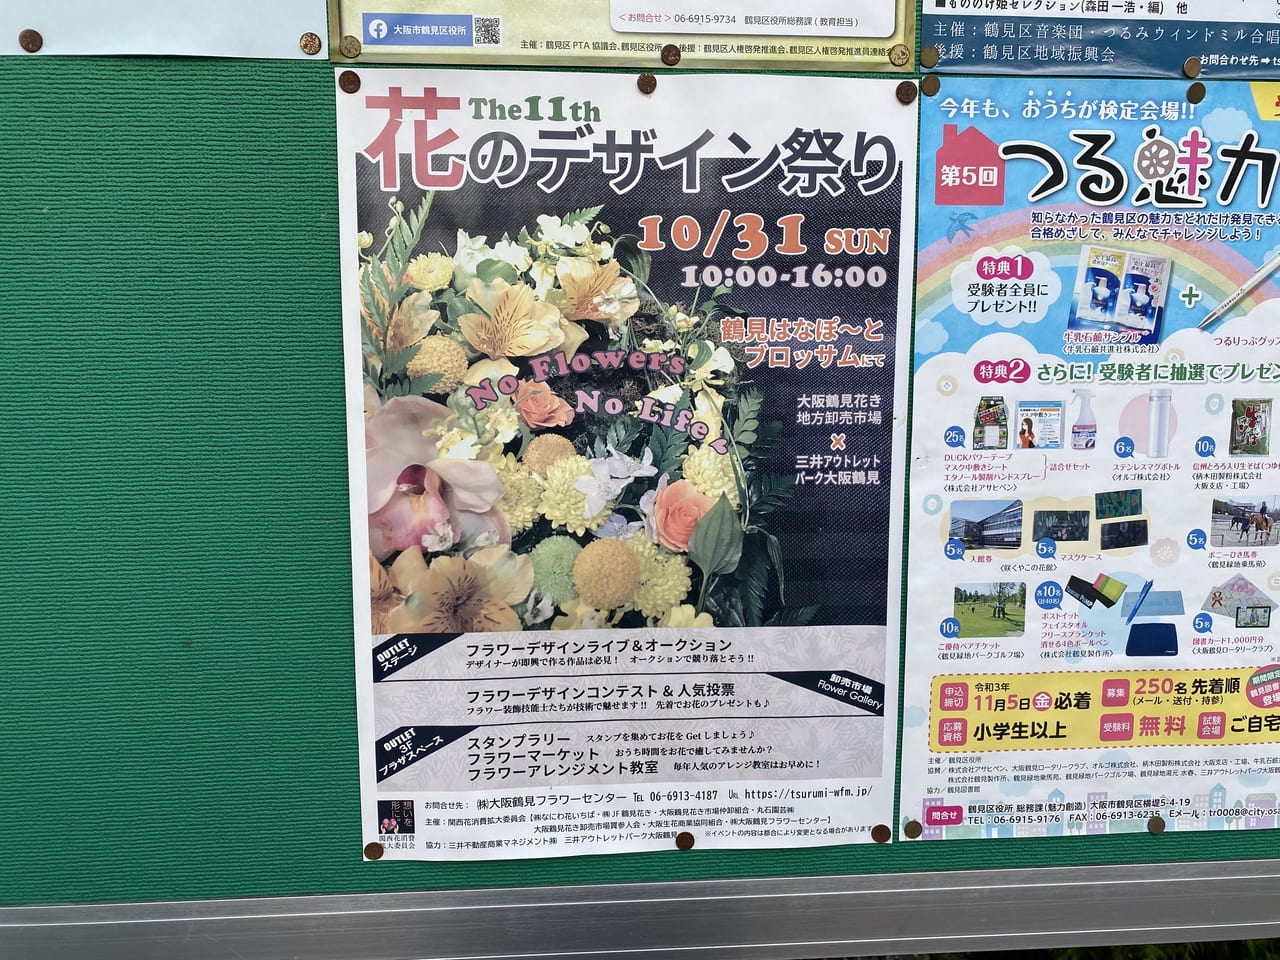 大阪市鶴見区 10月31日 日 花のデザイン祭り が開催されます 号外net 鶴見 城東